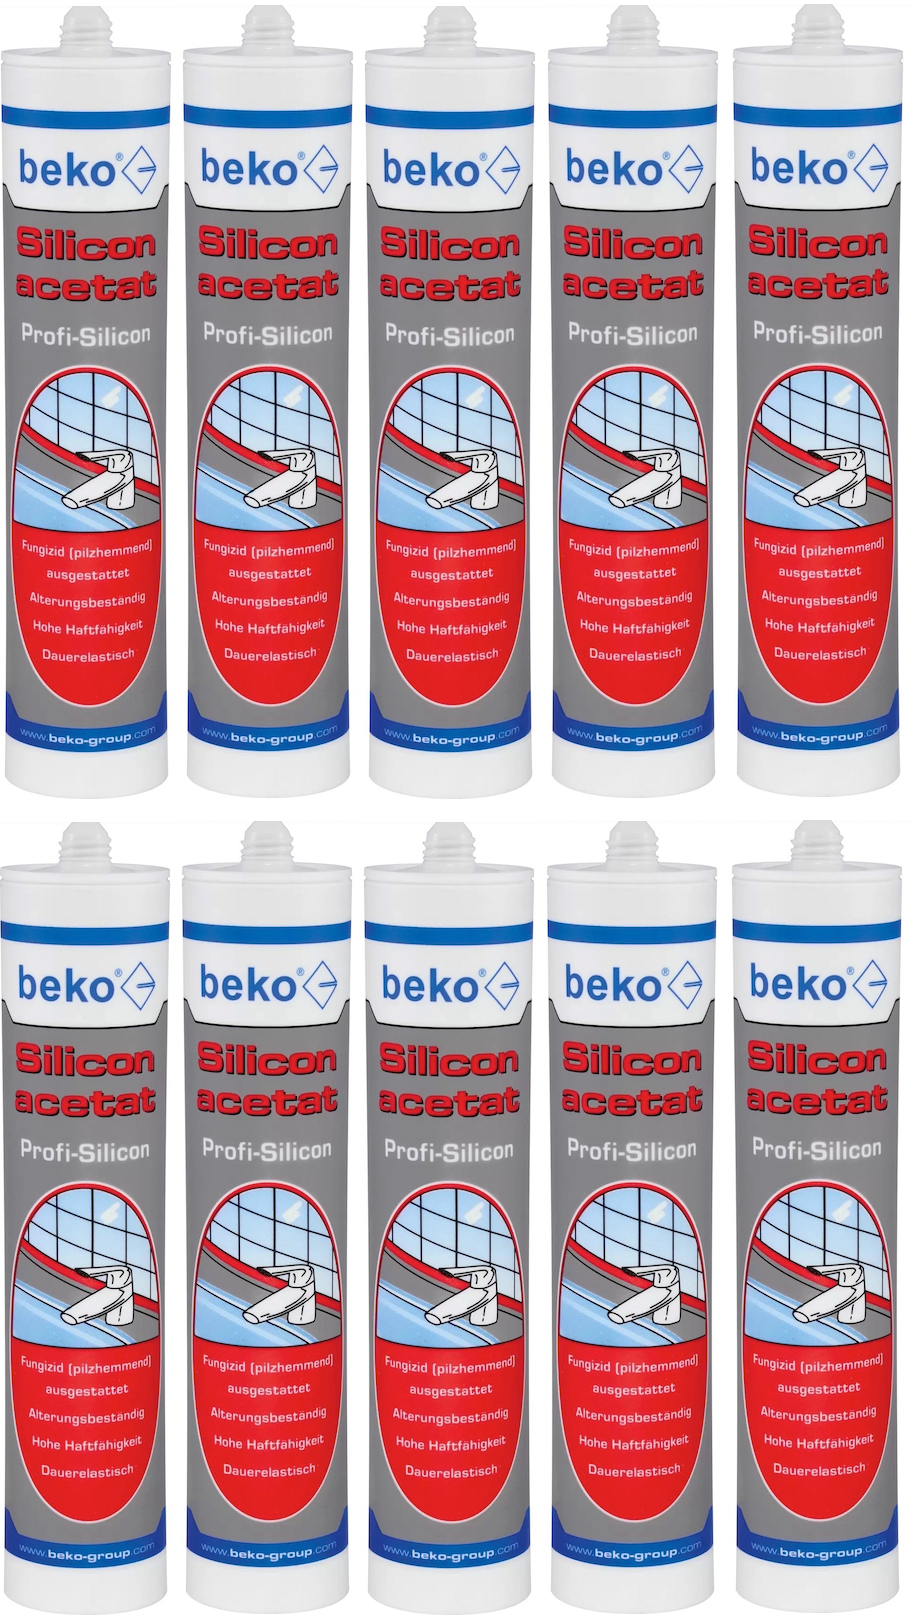 beko® Silicon acetat